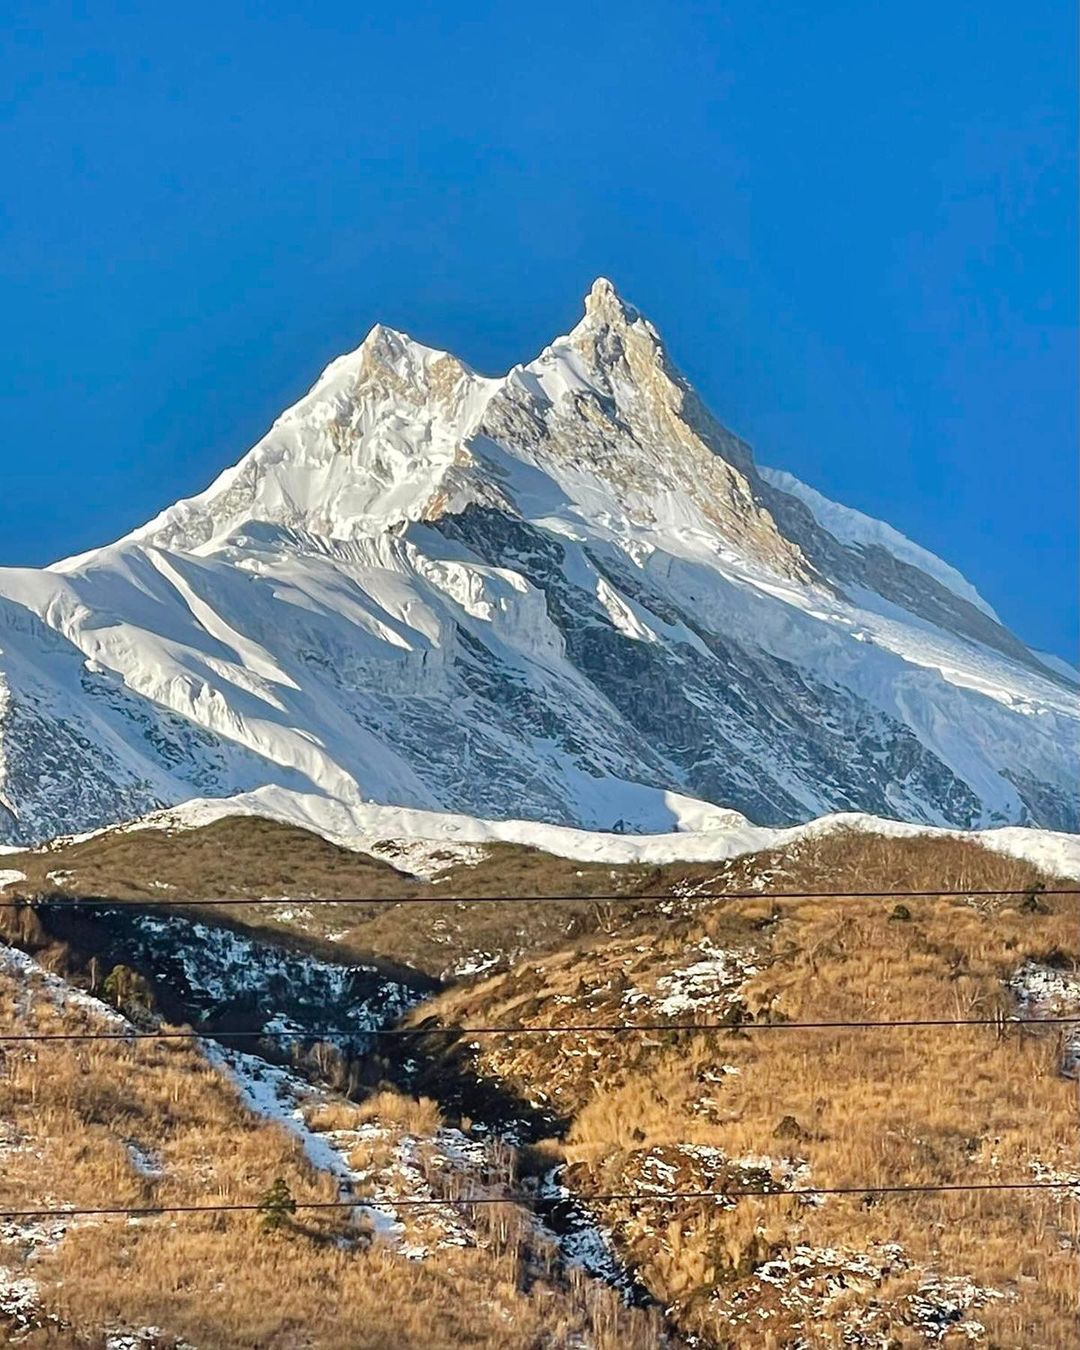 восьмитысячник Манаслу (Manaslu, 8156 м)- восьмая по высоте вершина мира. Фото Simone Moro